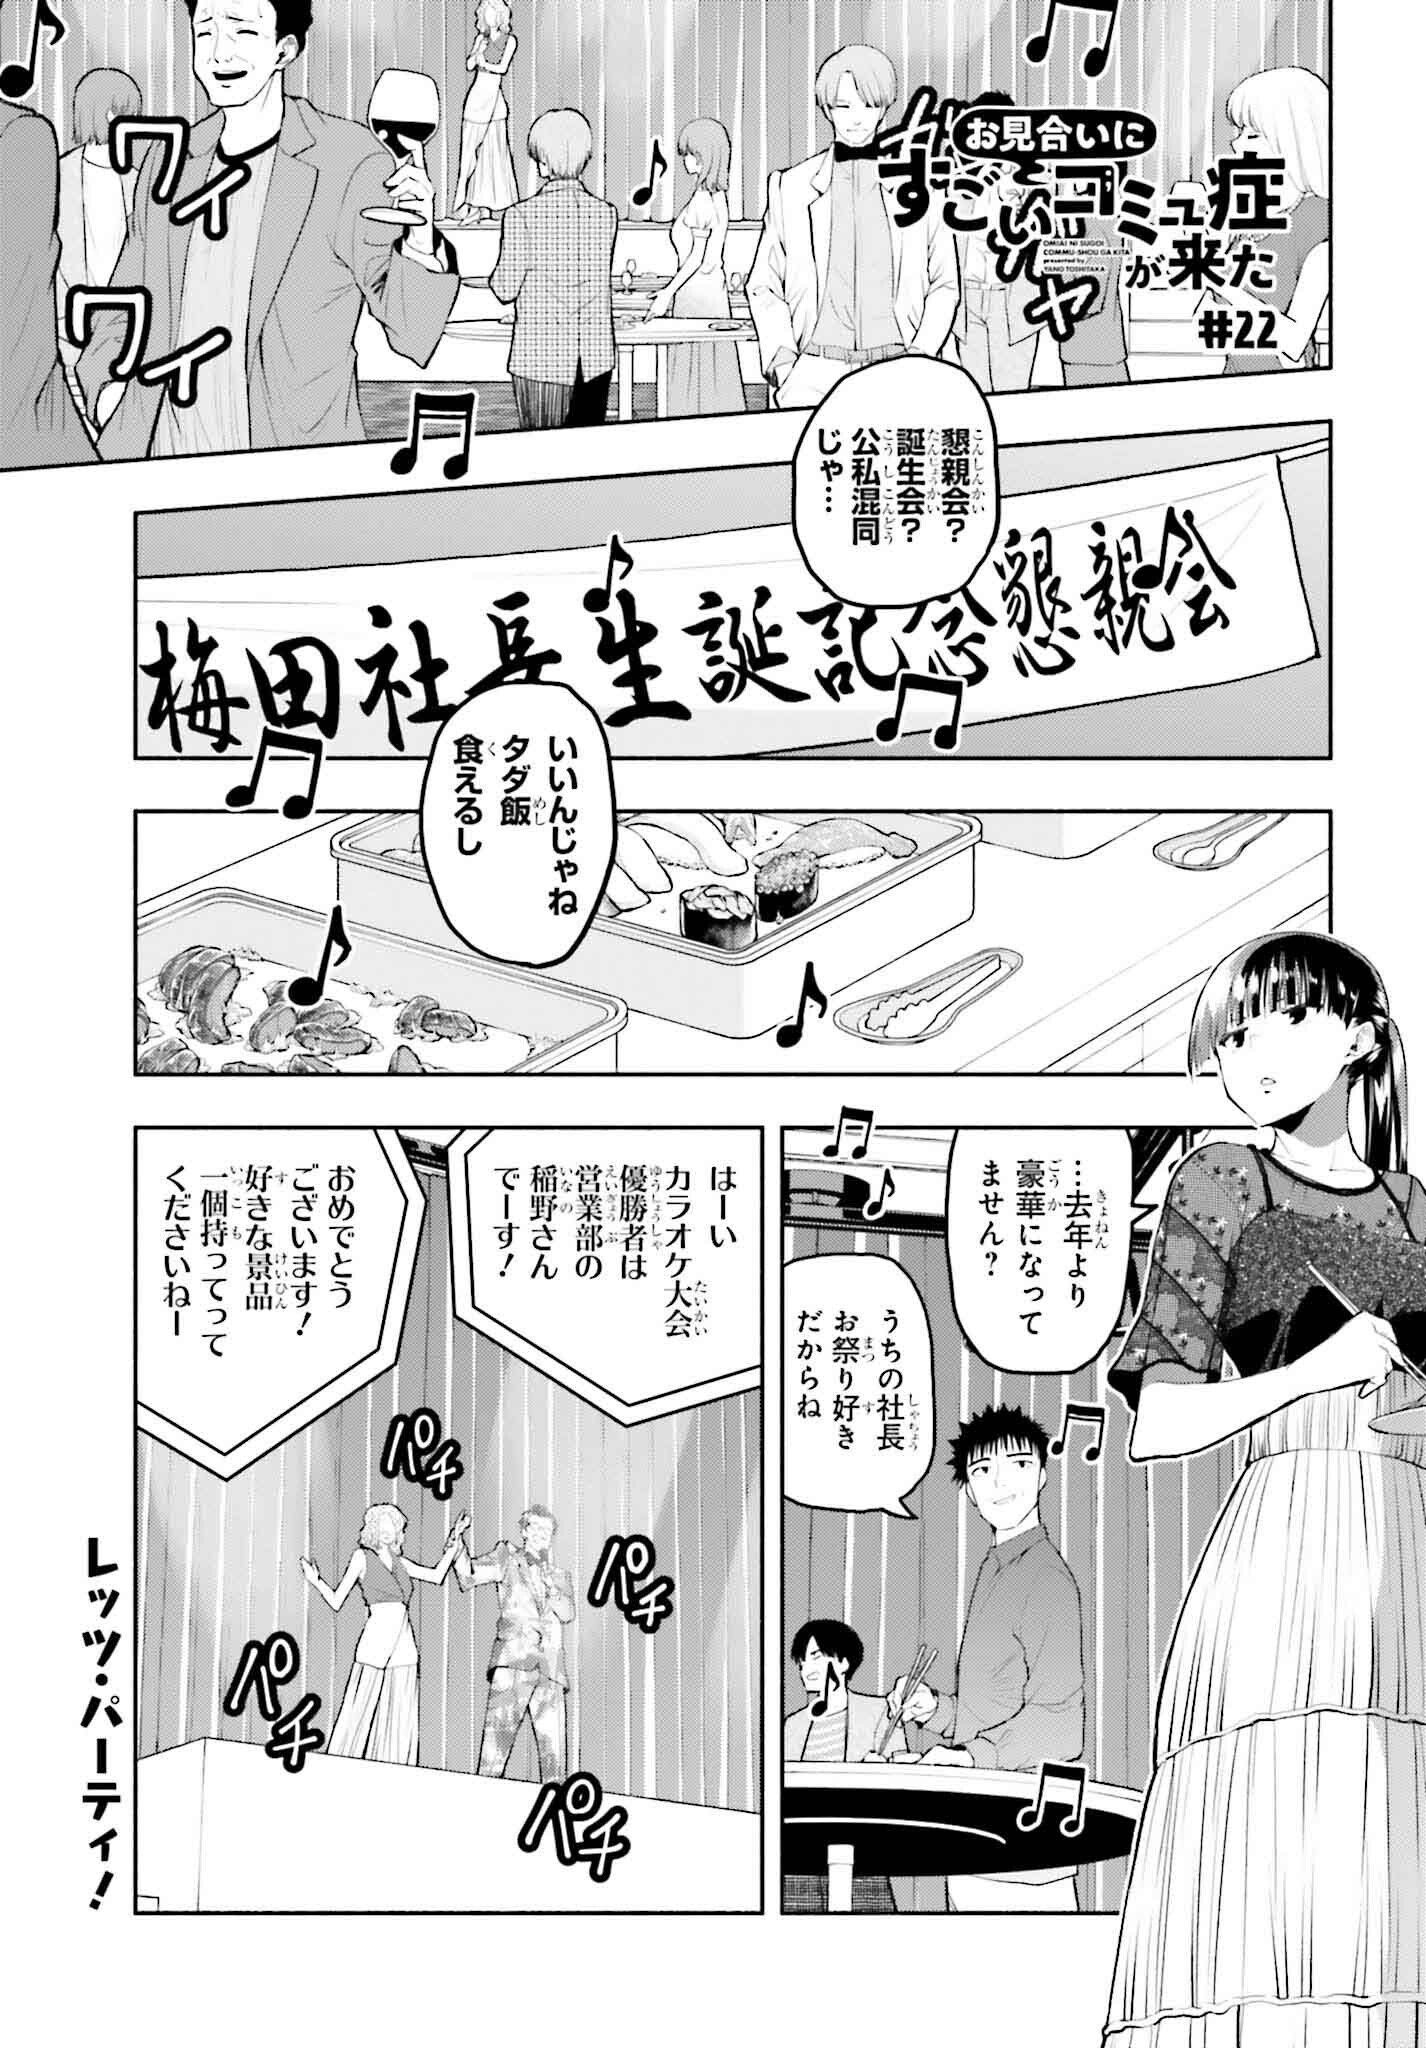 Omiai ni Sugoi Komyushou ga Kita - Chapter 22 - Page 1